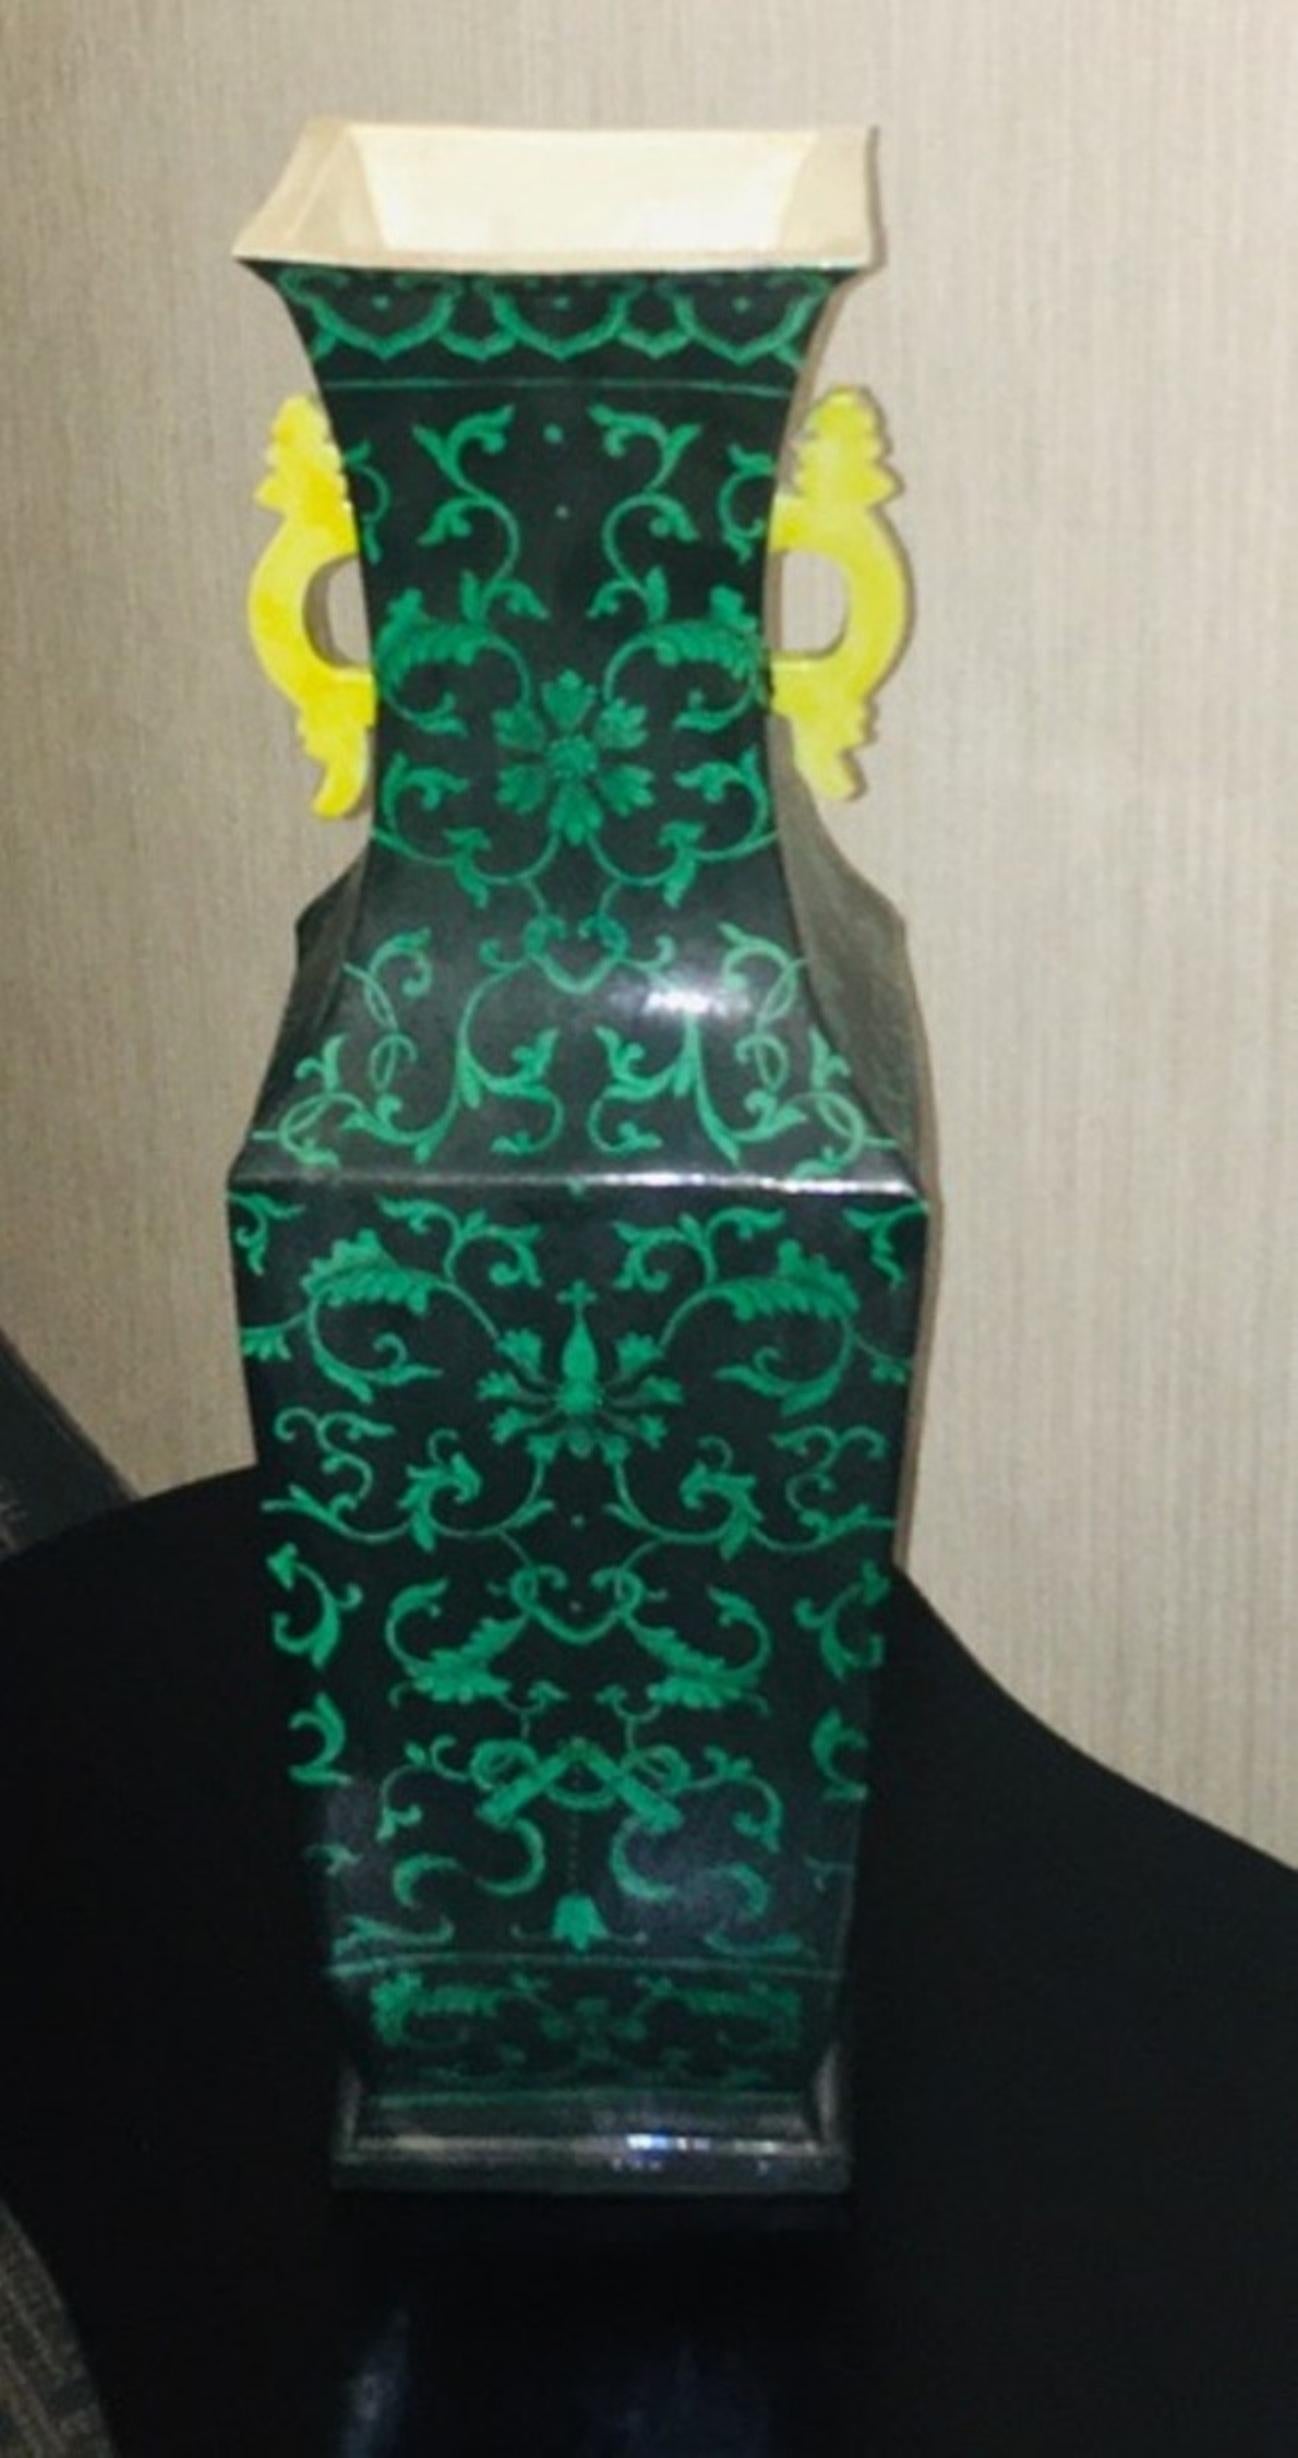 Porzellanvase aus der Jiaqing-Periode der chinesischen Qing-Dynastie mit grün glasierten Blumenelementen und Schneckenmotiven auf schwarzem Glasurgrund. Mit leuchtend gelben Drachengriffen und einer wunderschönen, ungewöhnlichen quadratischen Form.